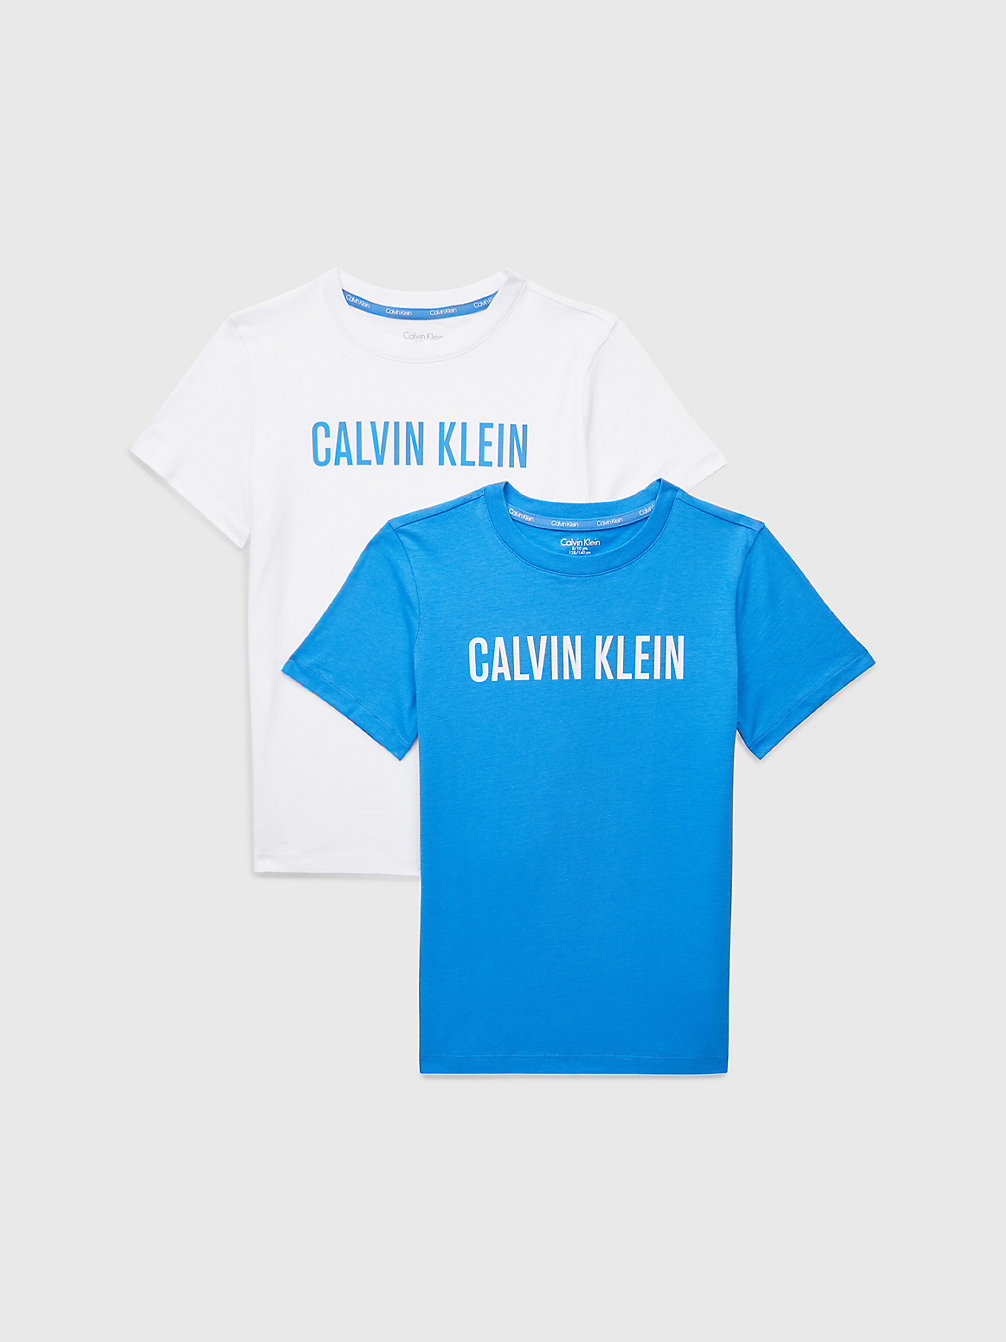 ELECTRICAQUA/PVHWHITE Lot De 2 T-Shirts Pour Garçon - Intense Power undefined garcons Calvin Klein